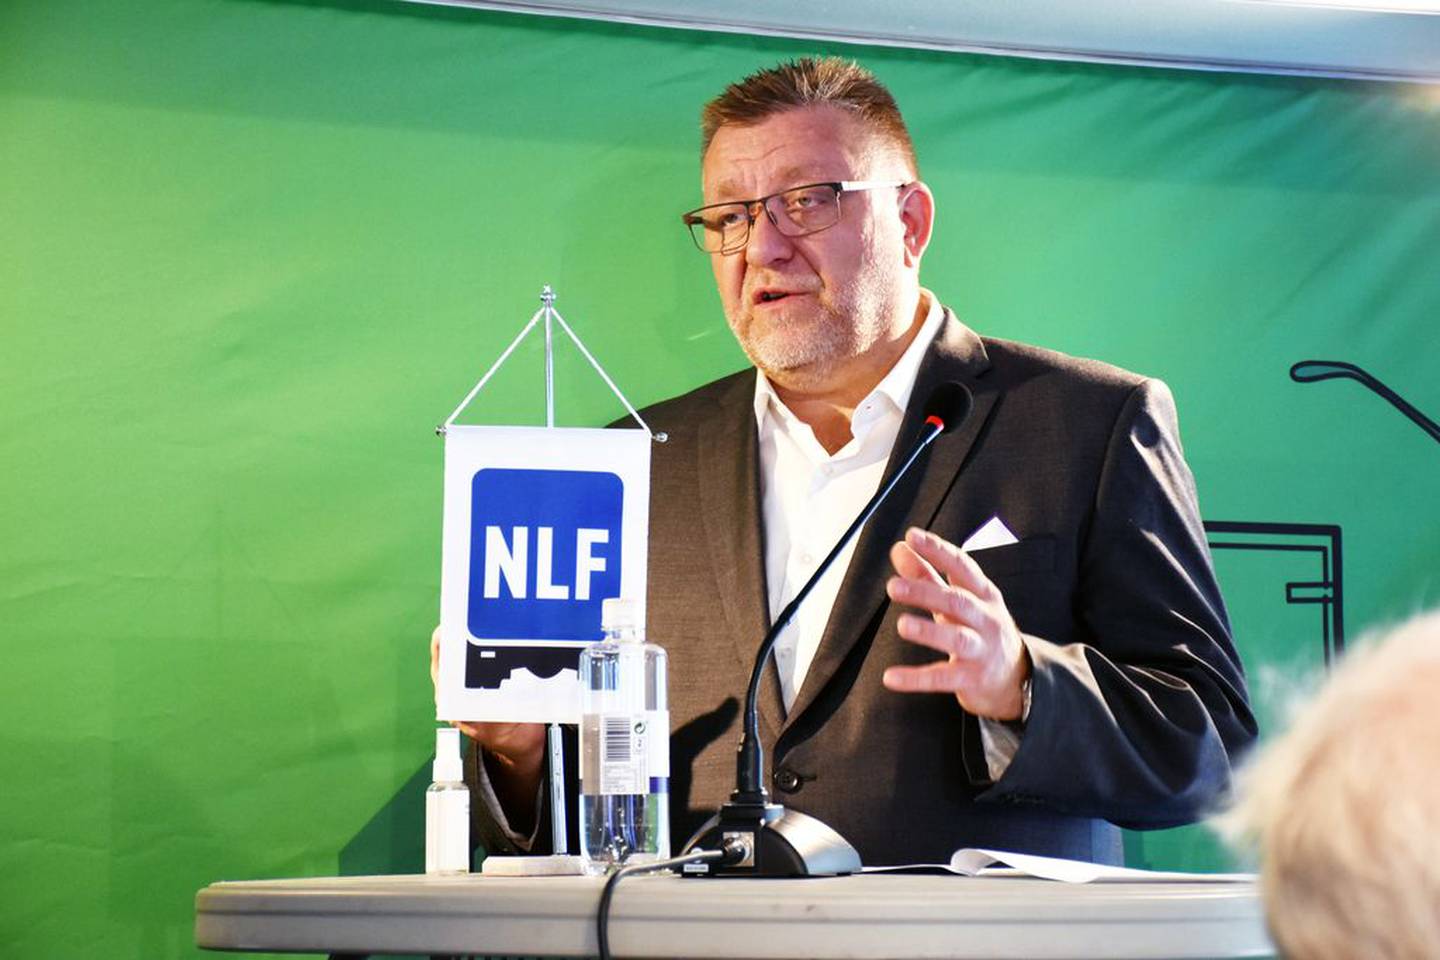 NLF-direktør Geir A. Mo oppfordrer folk til å nekte å ta imot pakker dersom de mistenker at sjåføren har dårlige lønns- og arbeidsvilkår.

Foto: Stein Inge Stølen/FriFagbevegelse